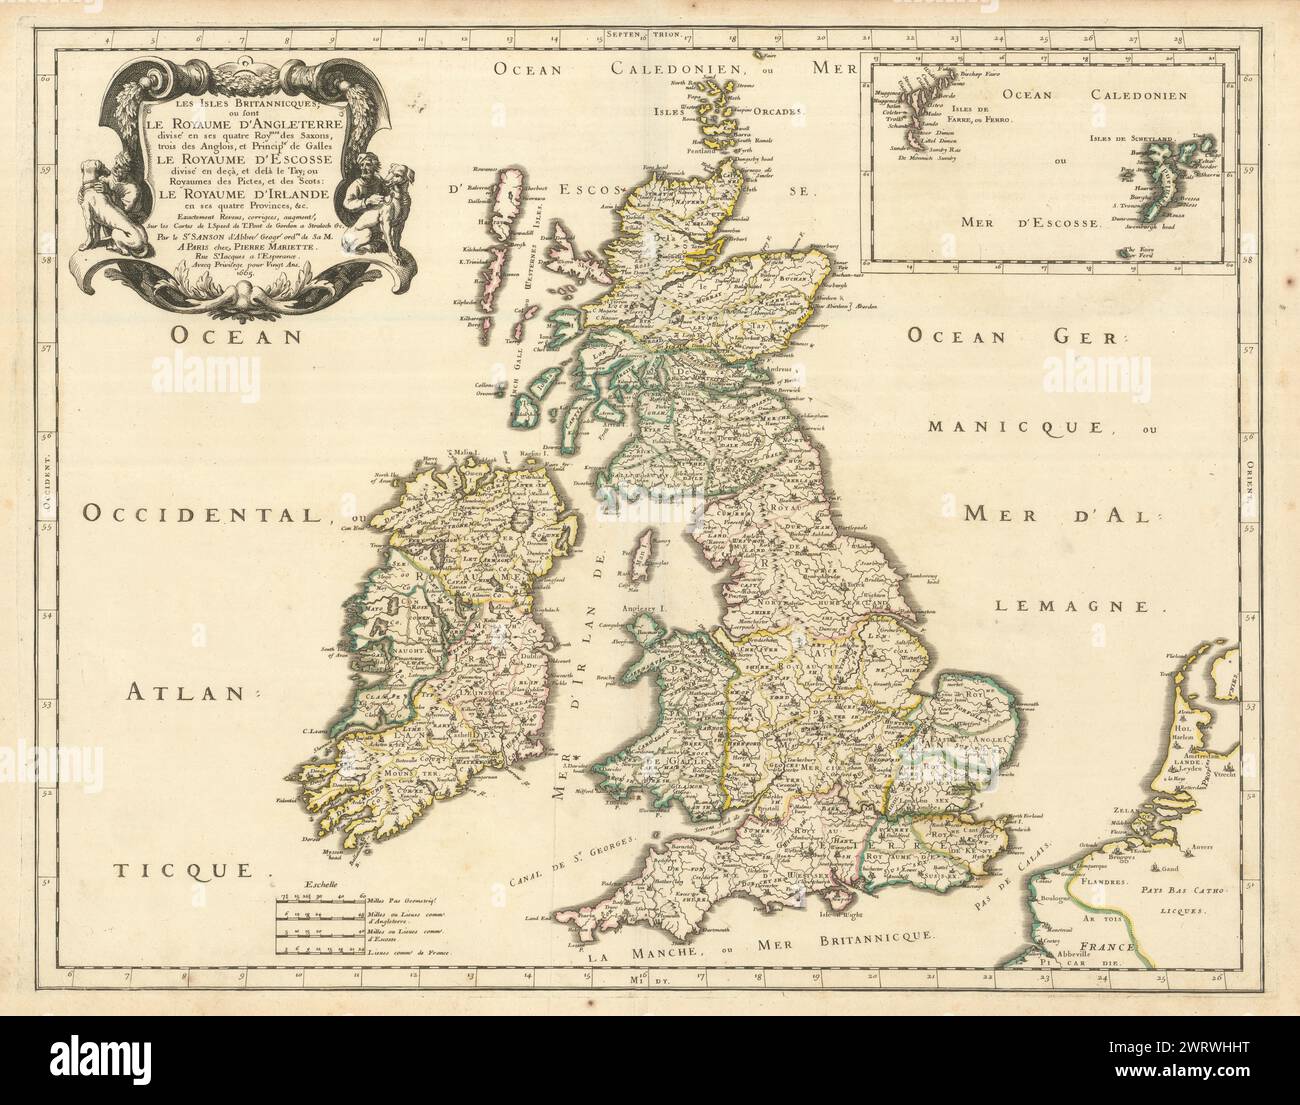 Les Iles Britannicques ou sont Le Royaume d'Angleterre divisé. SANSON 1665 map Stock Photo